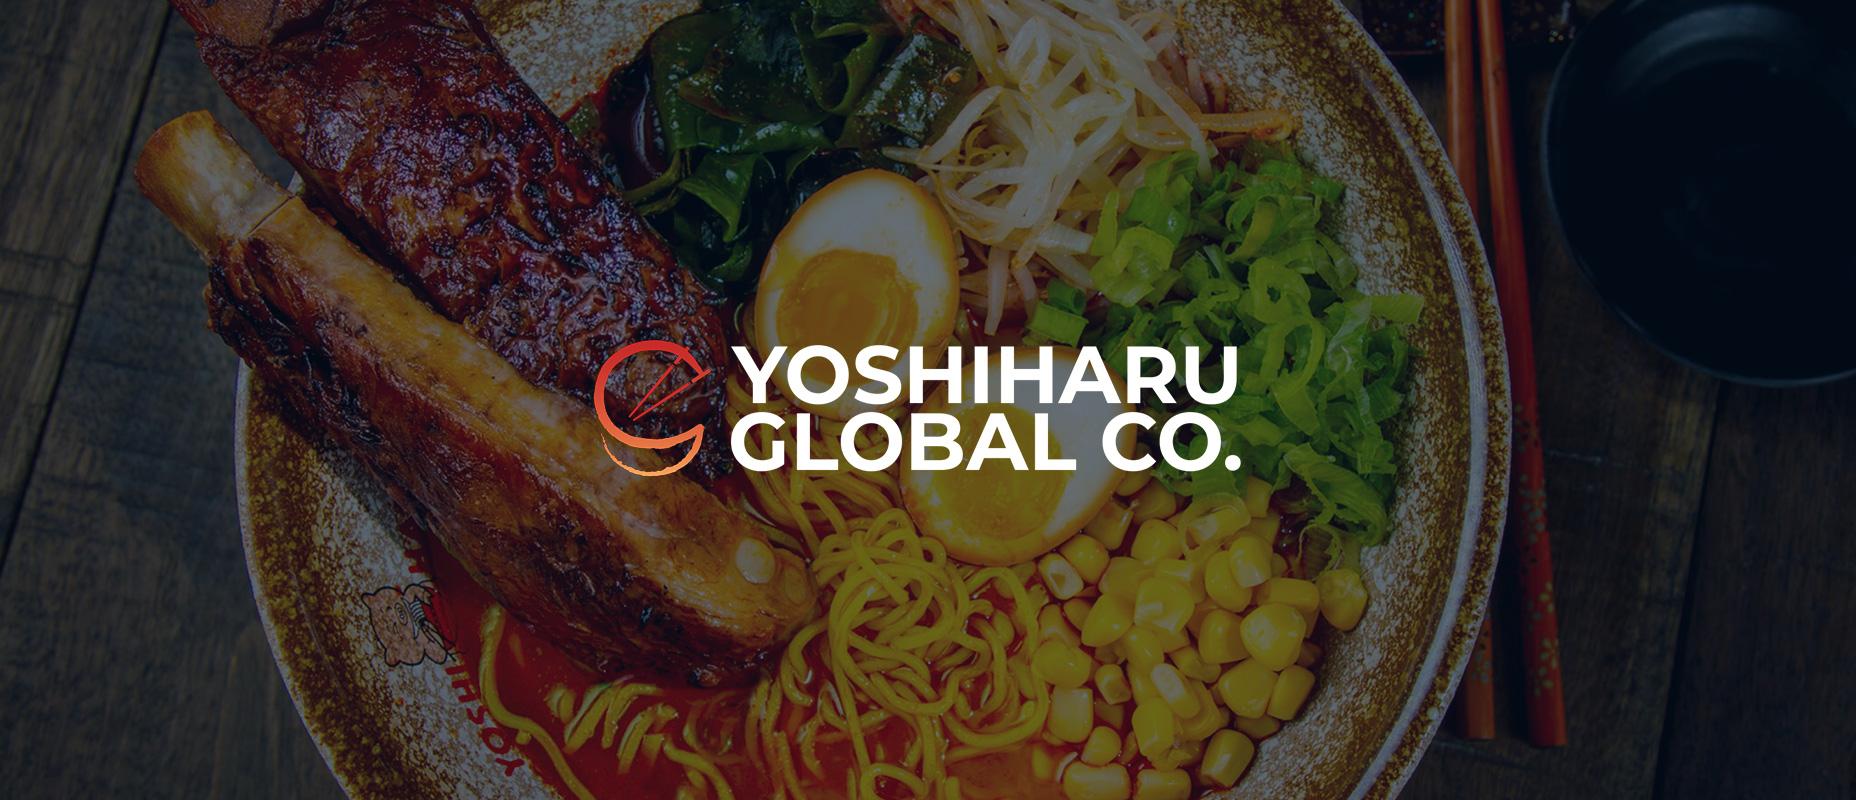 IPO Yoshiharu Global Co: найкращий рамен у Південній Каліфорнії